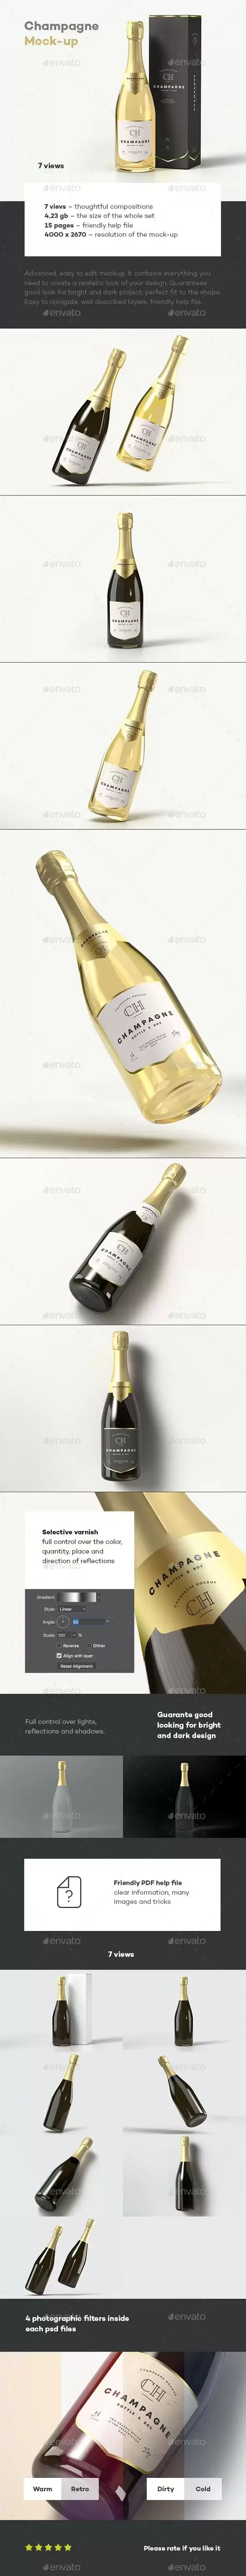 香槟酒瓶品牌包装设计样机模板 (psd)免费下载